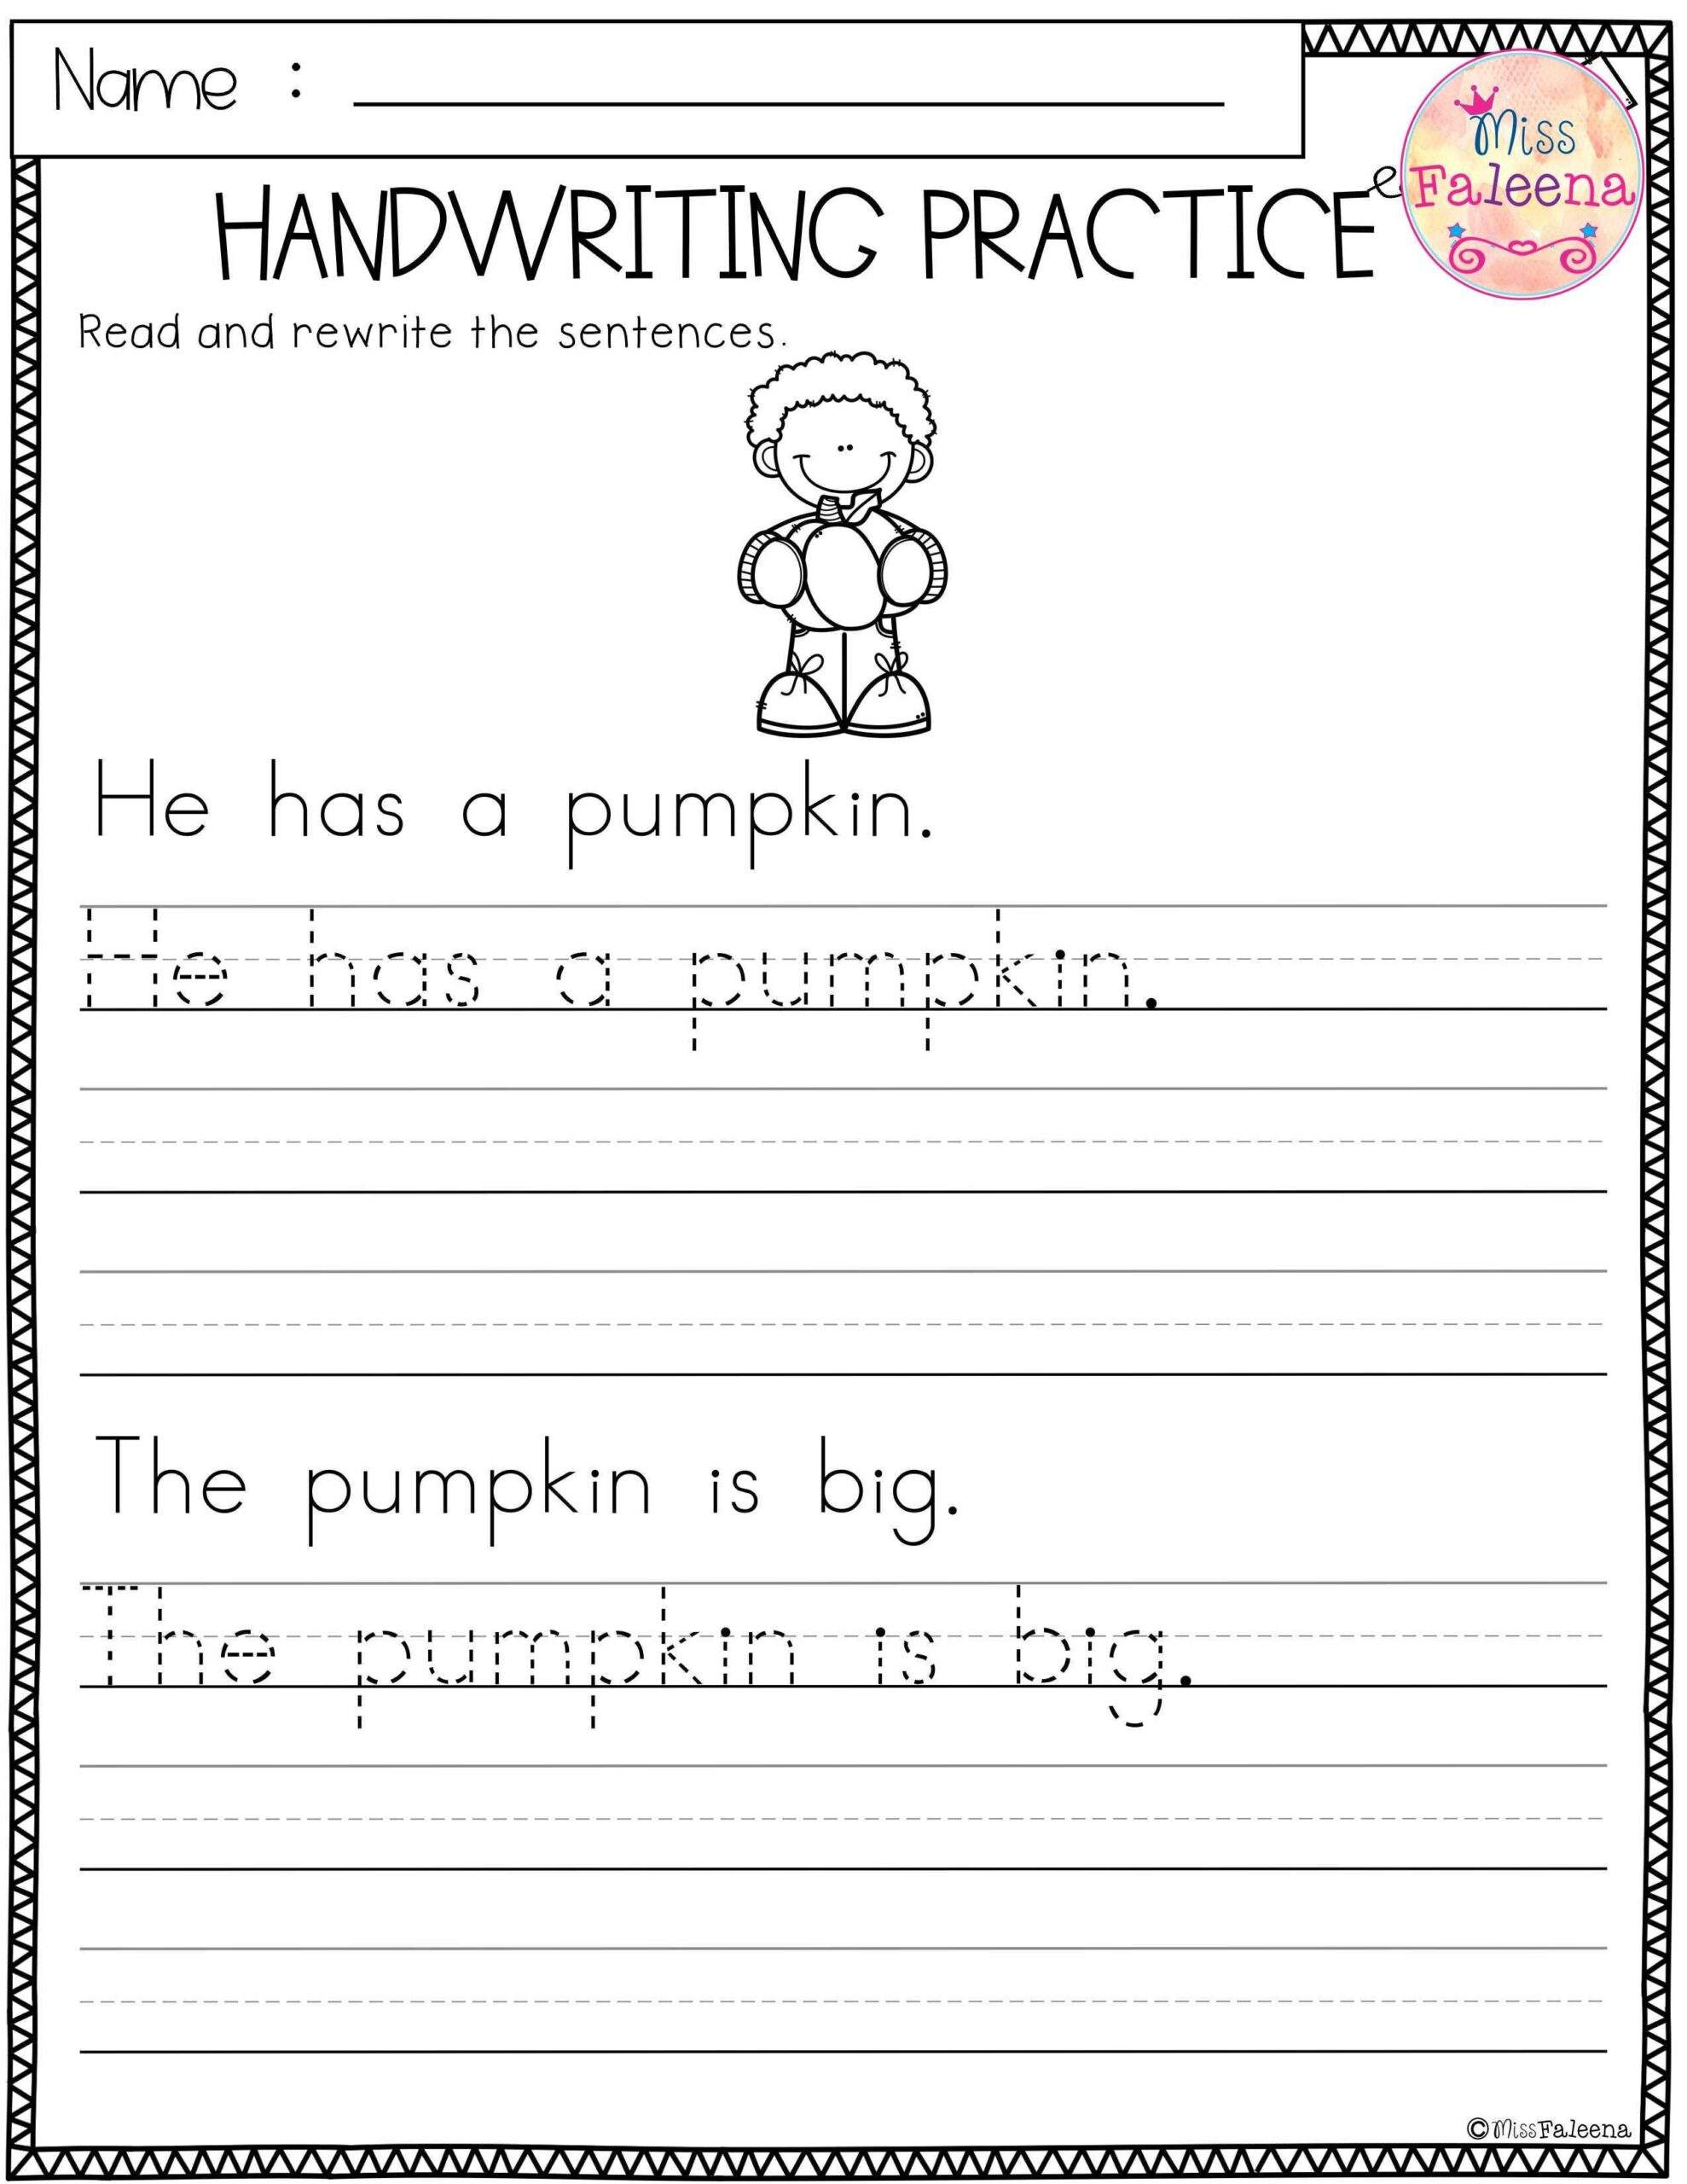 Free Handwriting Practice Worksheets For Kindergarten